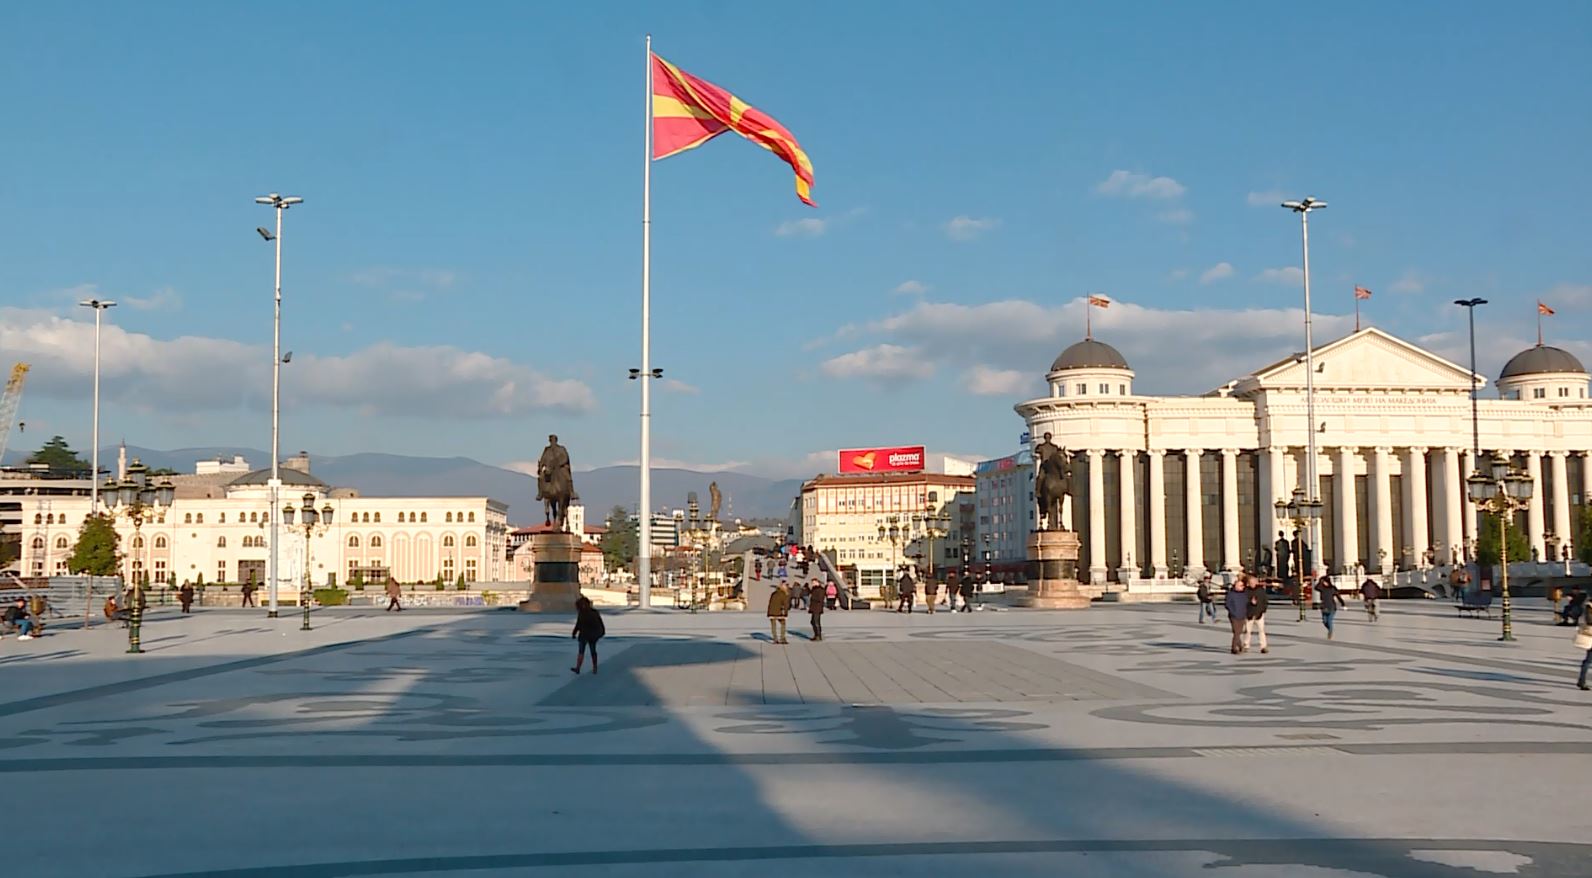 Retkoceri  Me Davkovan presidente  marrëdhëniet Prishtinë   Shkup s do të jenë si deri tani